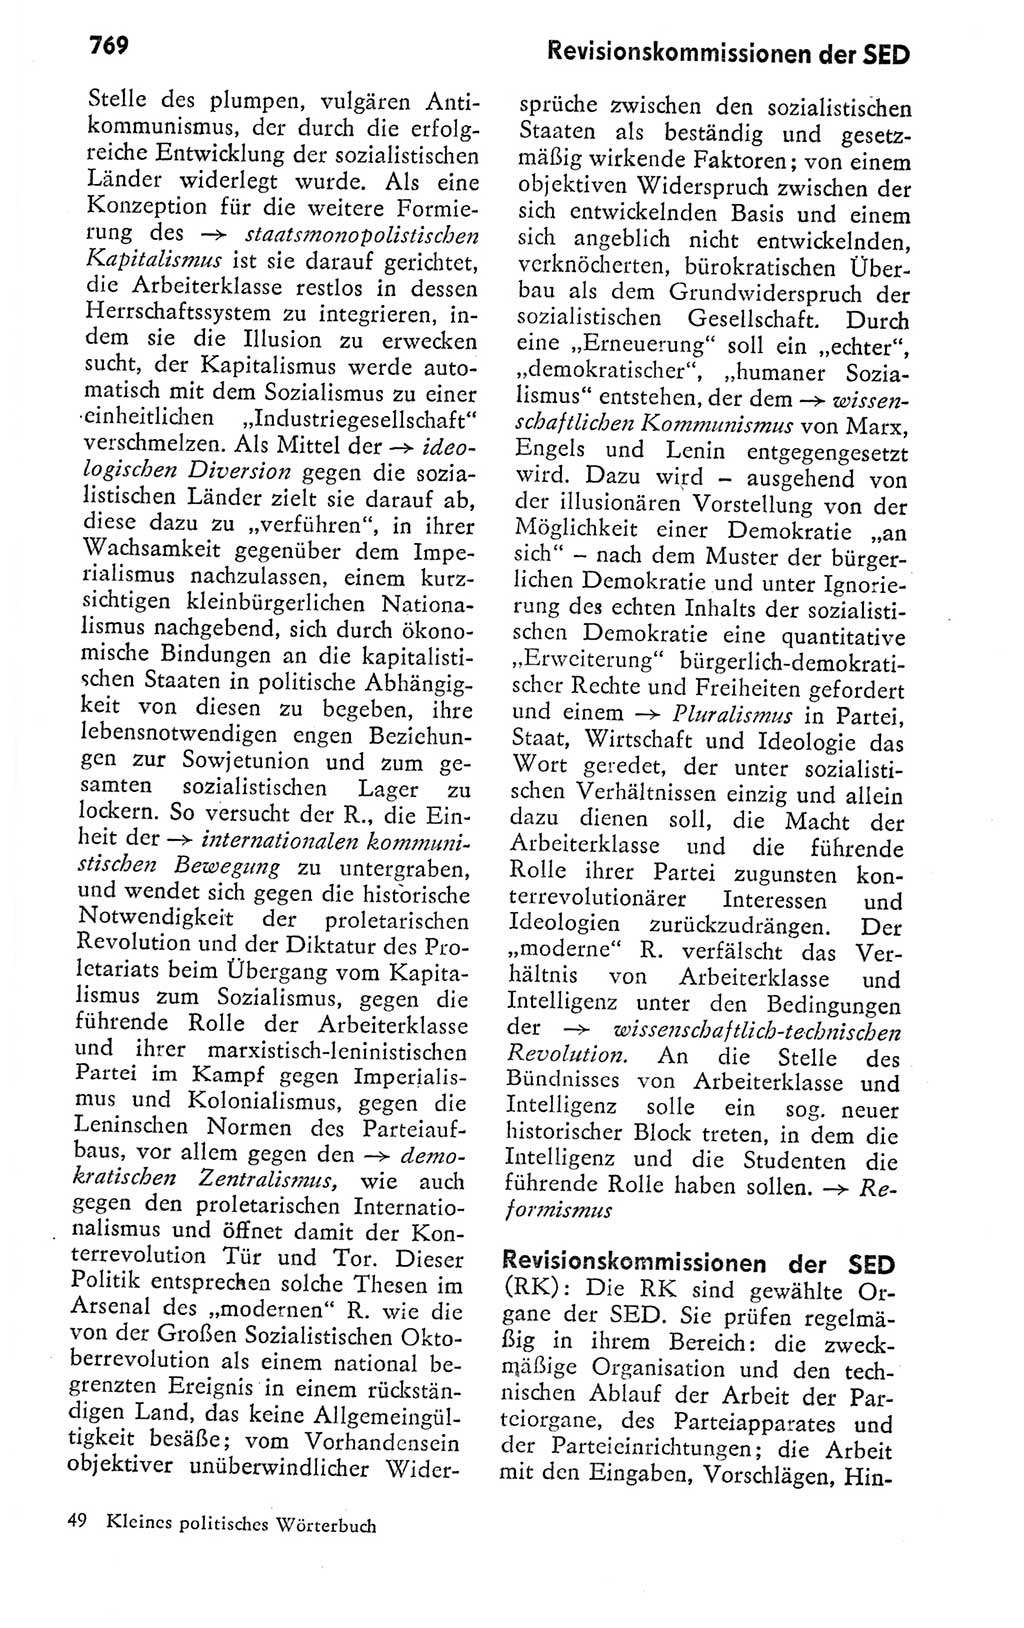 Kleines politisches Wörterbuch [Deutsche Demokratische Republik (DDR)] 1978, Seite 769 (Kl. pol. Wb. DDR 1978, S. 769)